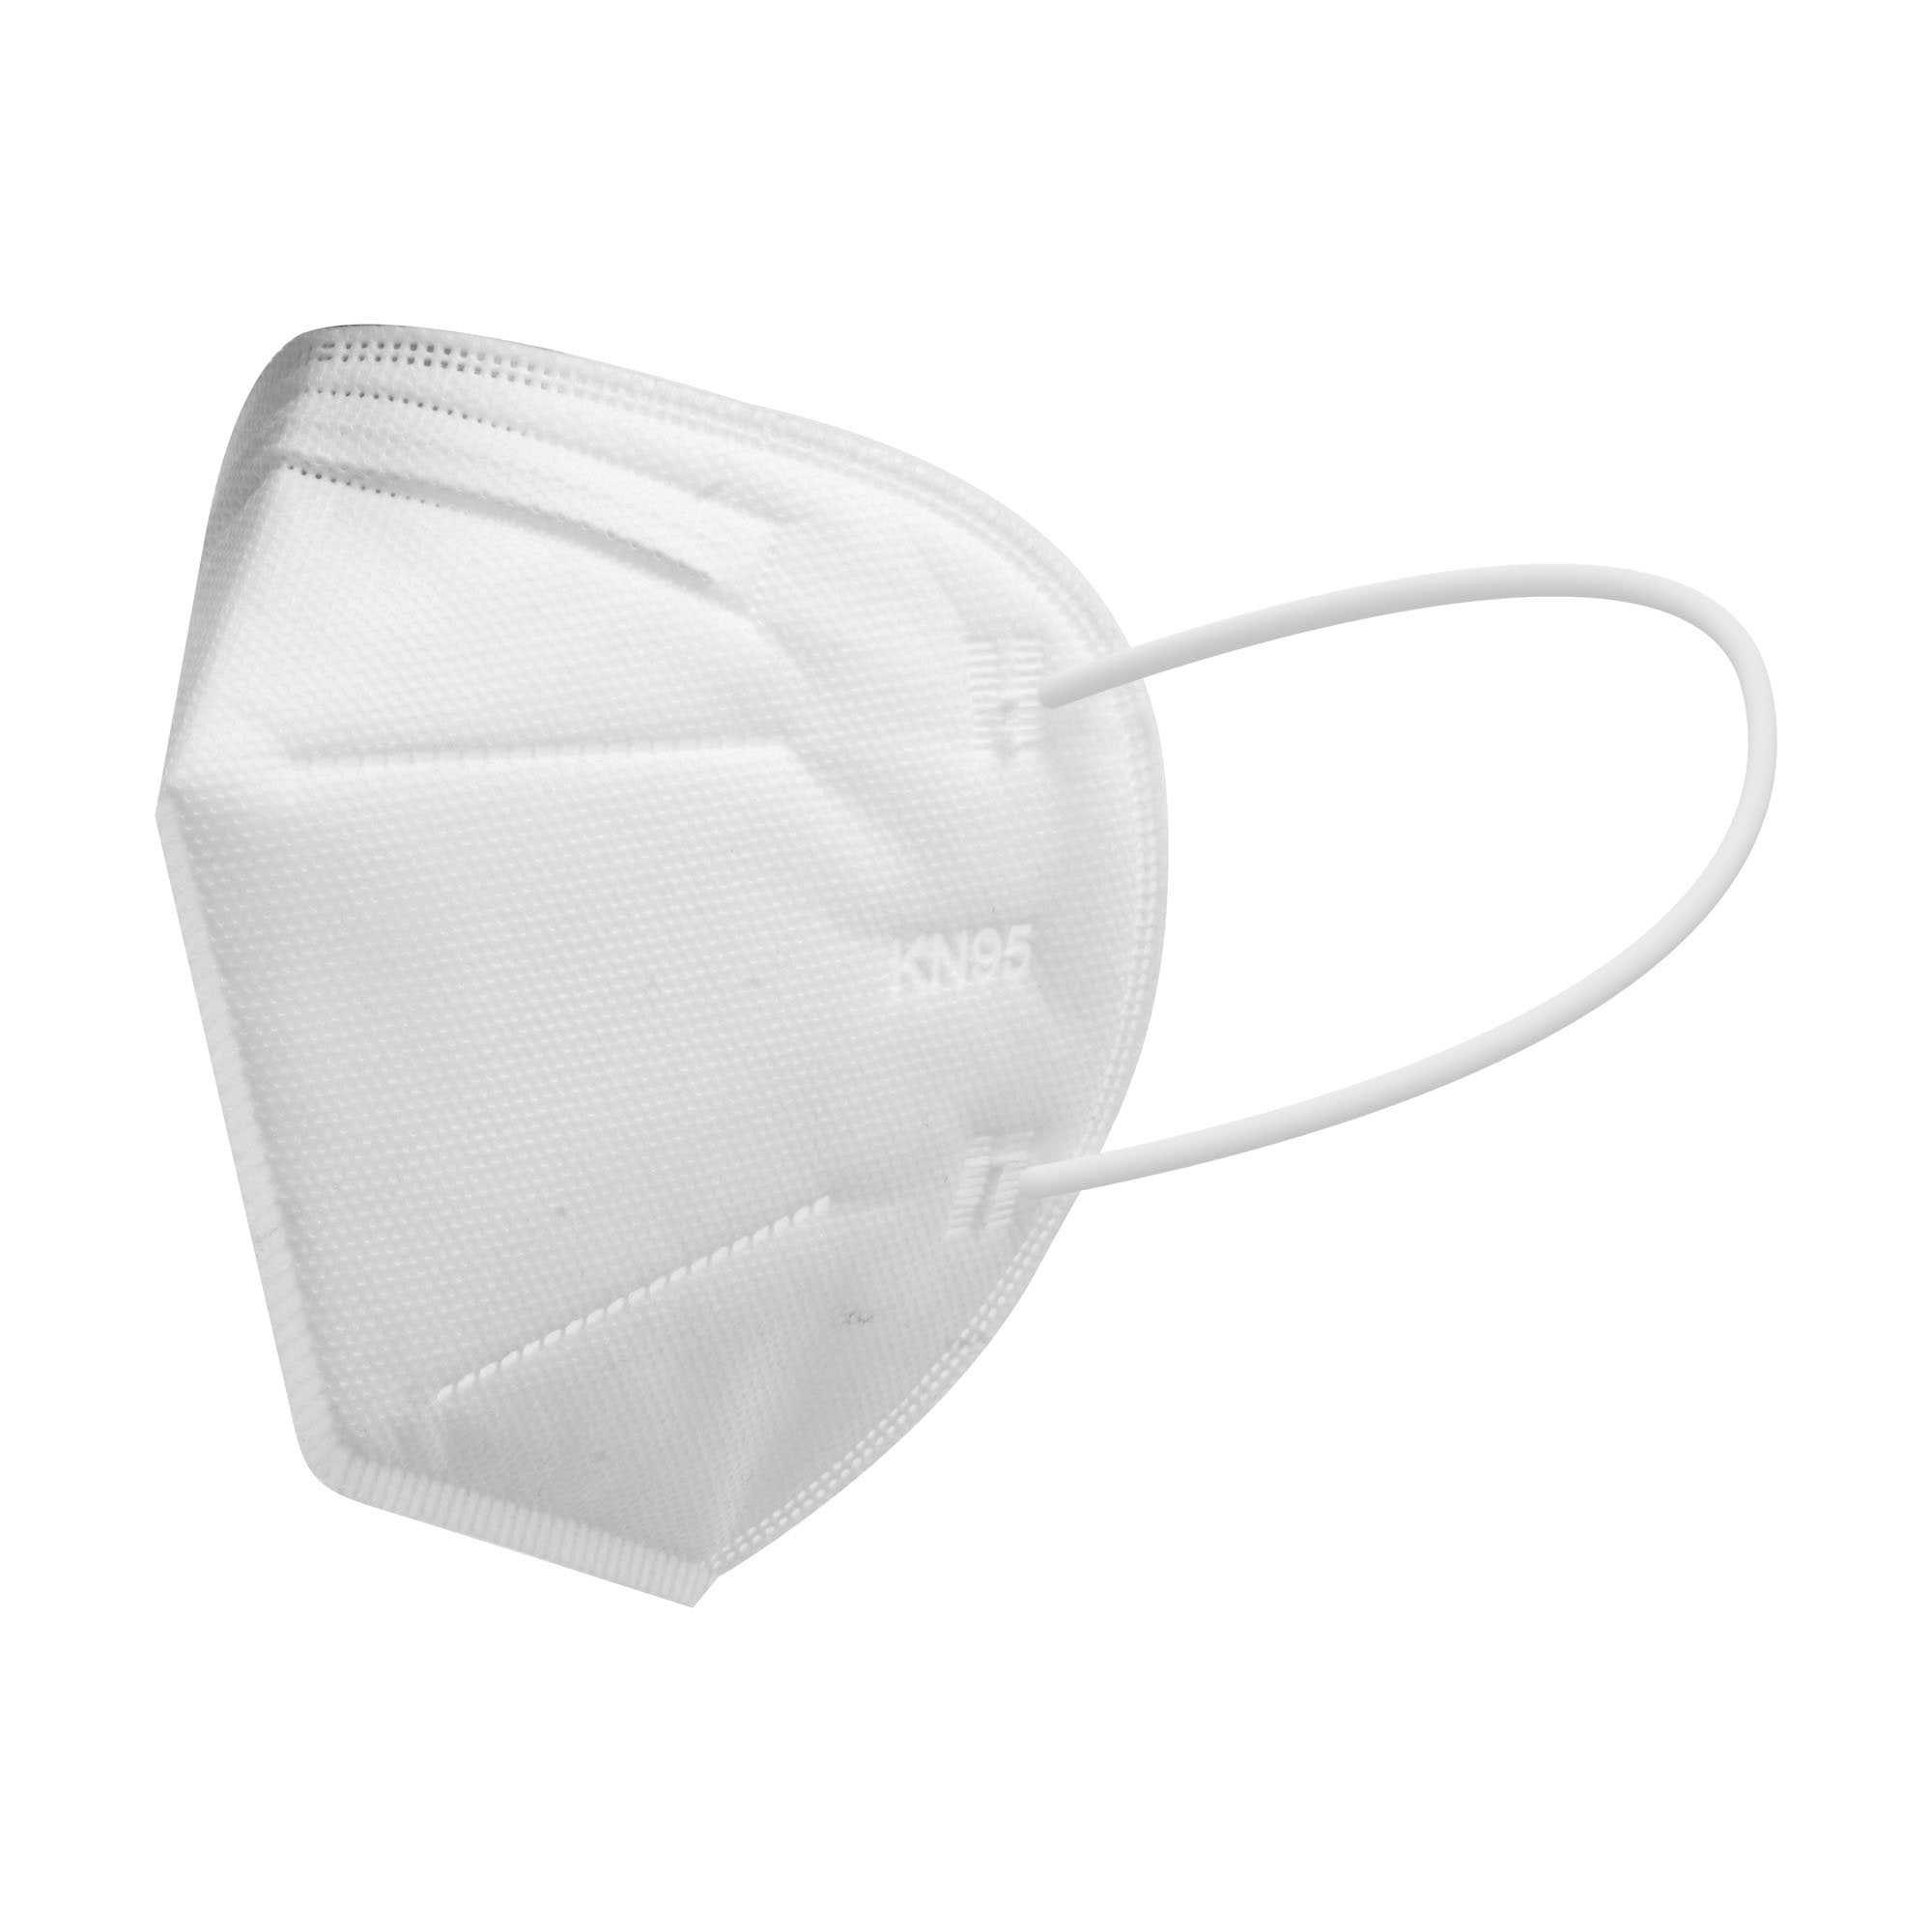 Masque respiratoire KN95 (sac de 10 masques) 